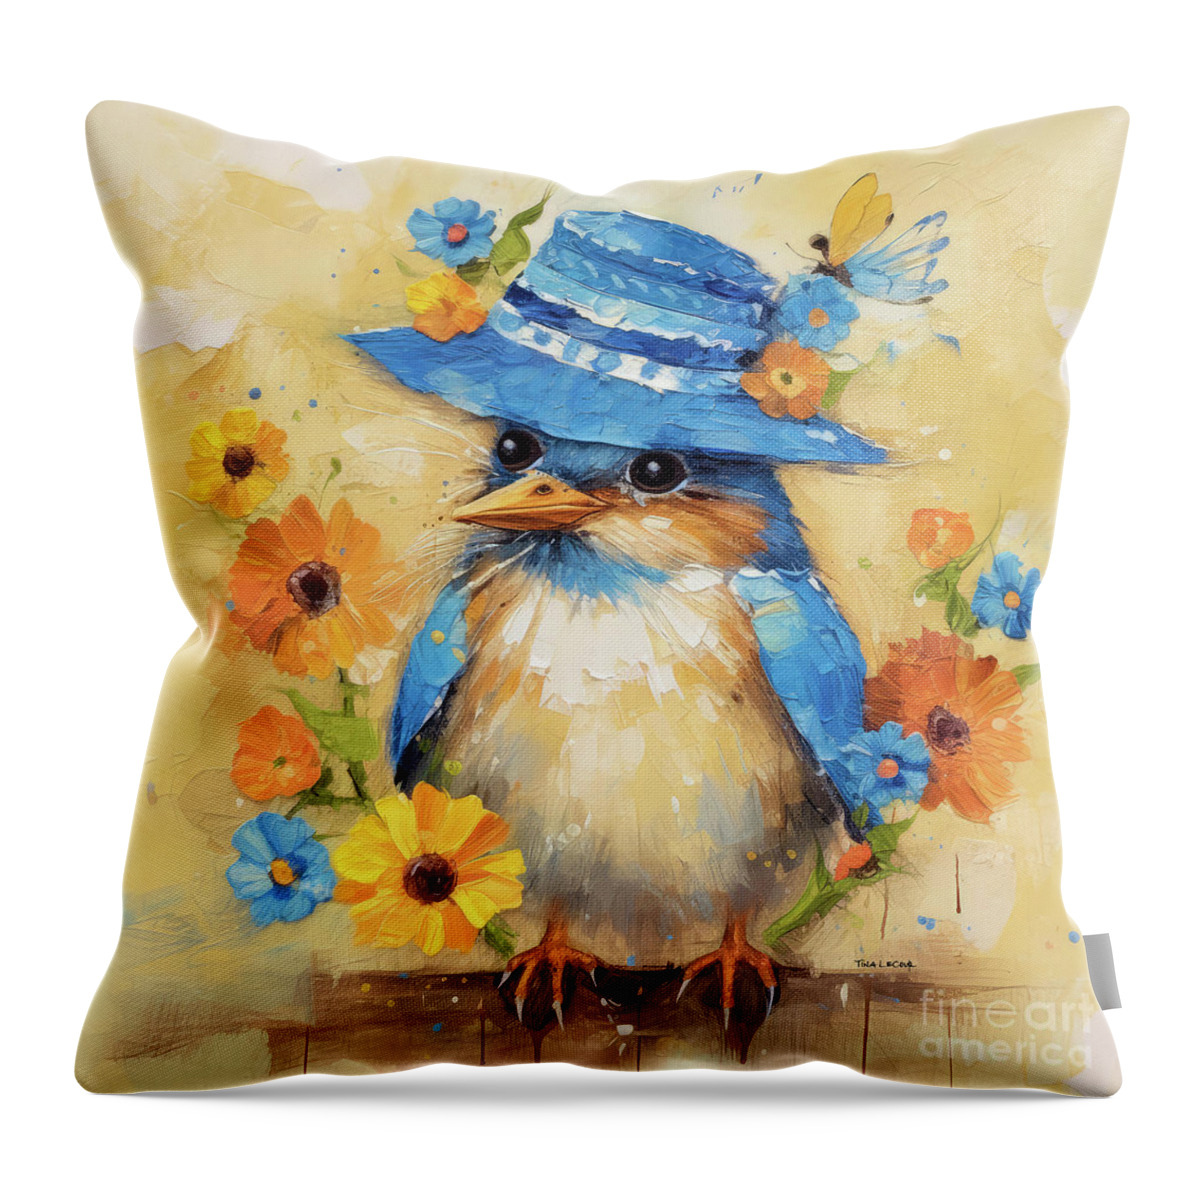 Bluebird Throw Pillow featuring the painting Sweet Little Bluebird by Tina LeCour